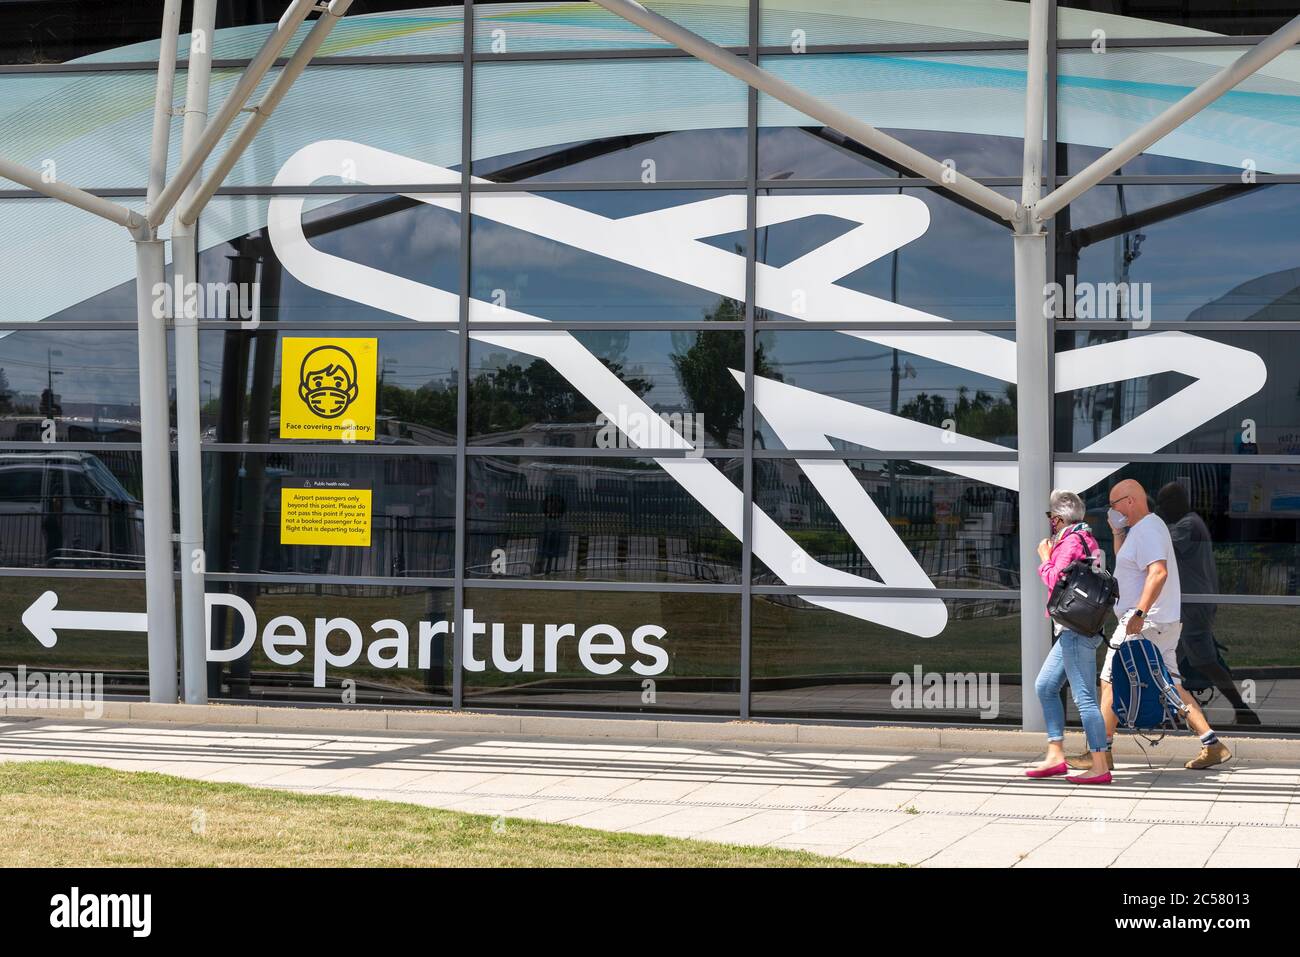 Aéroport de Londres Southend, Essex, Royaume-Uni. 1er juillet 2020. Le vol Ryanair FR2190 doit partir à 13 h 15 à Malaga sur la Costa del sol en Espagne depuis l'aéroport régional de Southend on Sea, leur premier vol passager régulier depuis cet aéroport depuis la mise à l'arrêt du coronavirus COVID-19 début mars, alors que les aéroports britanniques commencent à rouvrir. Les passagers arrivant pour le vol ont dû se conformer à des directives strictes lors de leur entrée dans le terminal de l'aéroport, qui comprend le port de masques et devra le faire pour le vol et l'arrivée en Espagne Banque D'Images